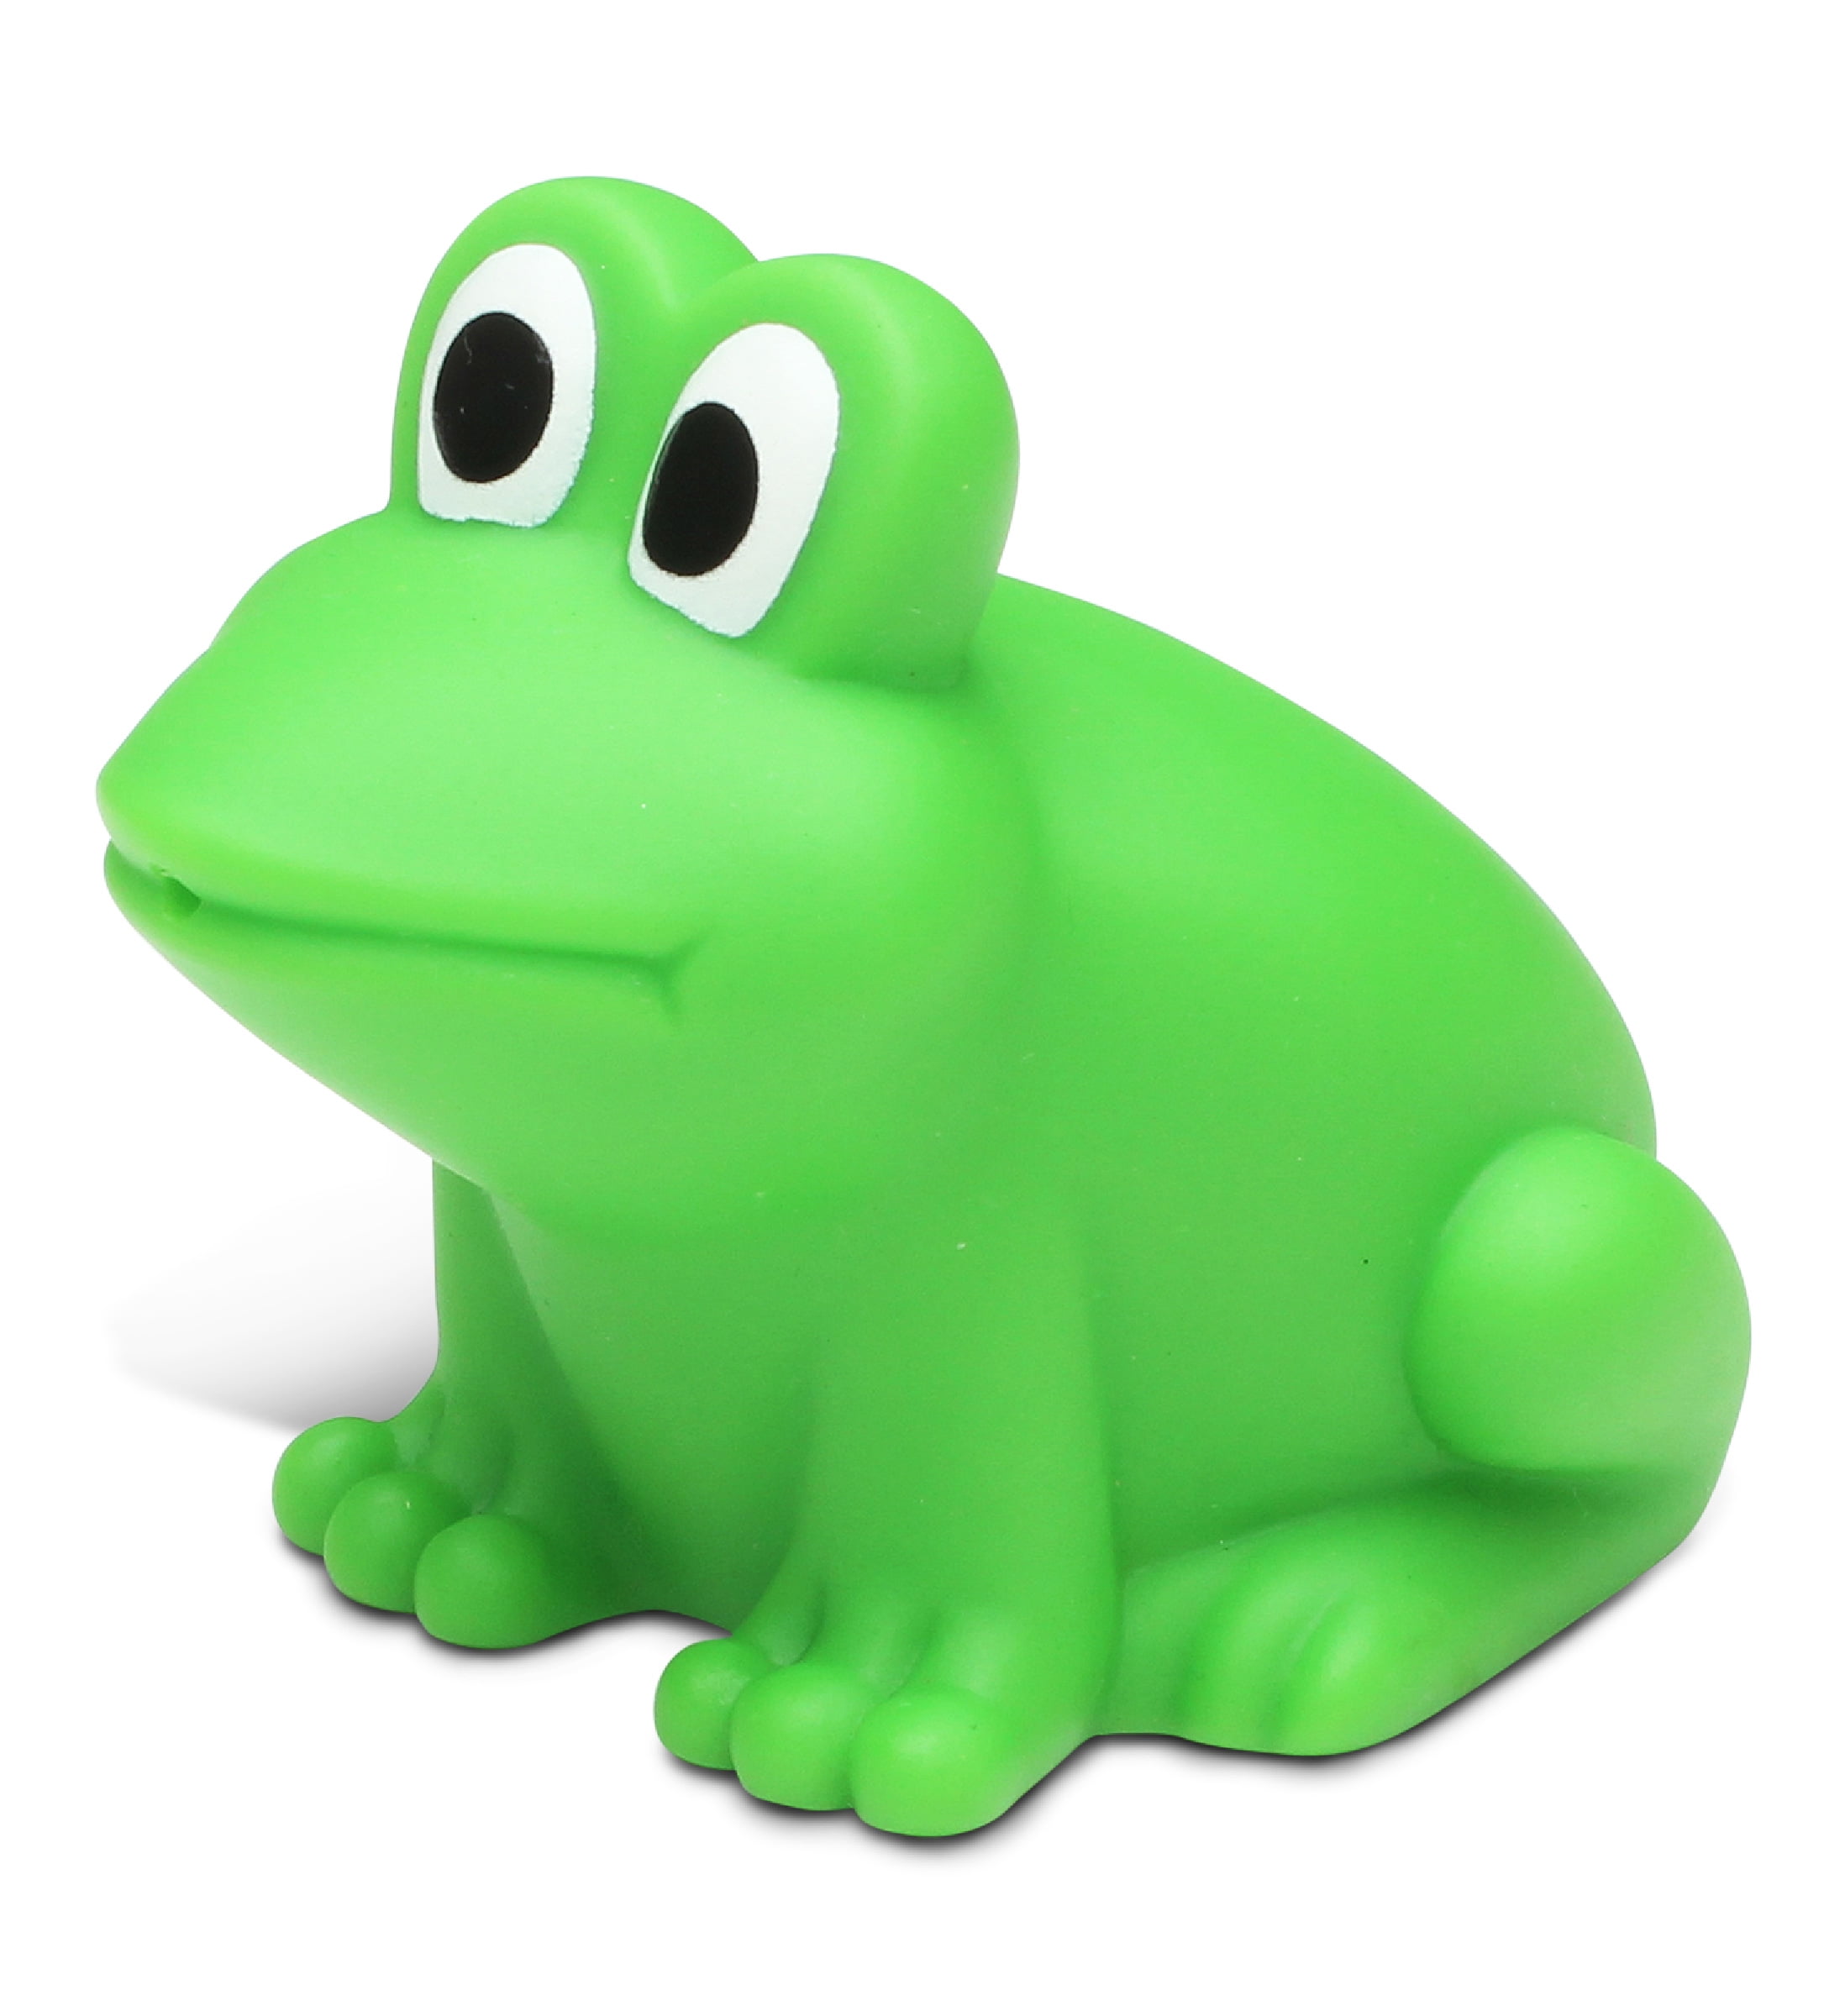 Dollibu Frog Bath Buddy Squirter, Floating Green Frog Rubber Bath Toy  Figurine - 3 inches 